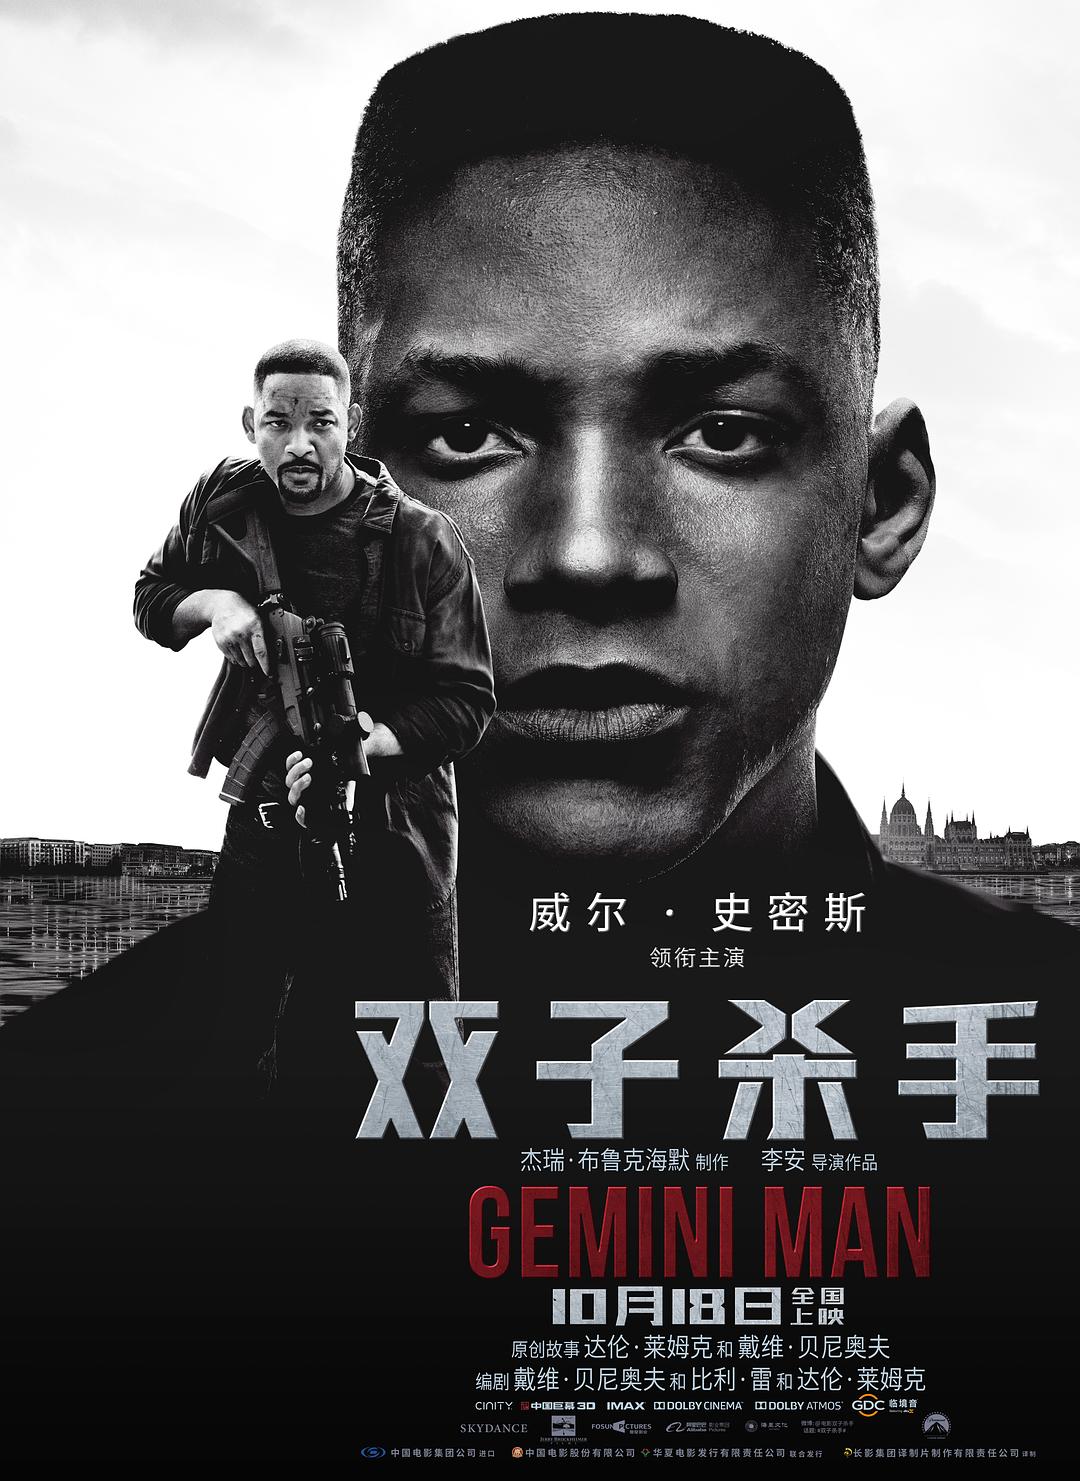 双子杀手/双子使命:叠影危机 Gemini.Man.2019.1080p.BluRay.x264.DTS-HD.MA.7.1-FGT 12.92GB-1.png